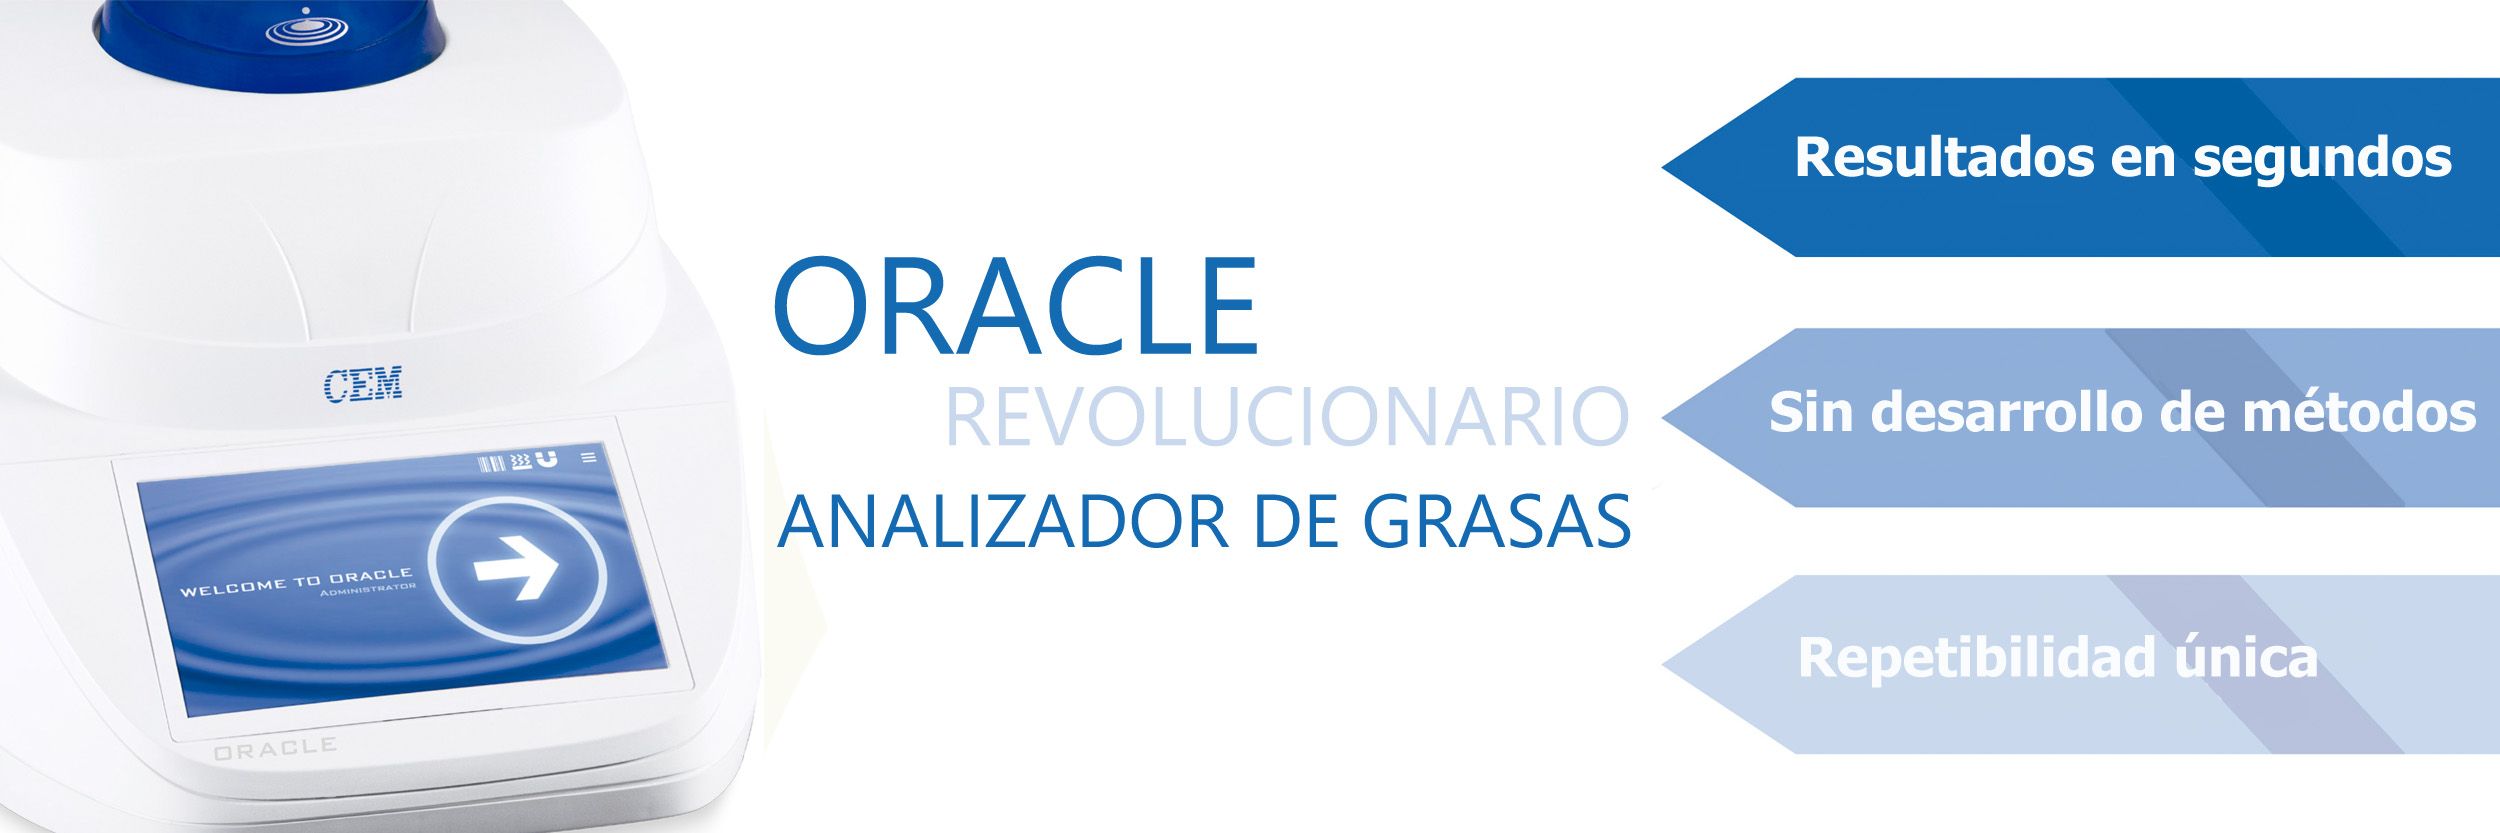 Oracle: el primer analizador de grasas sin desarrollo de métodos